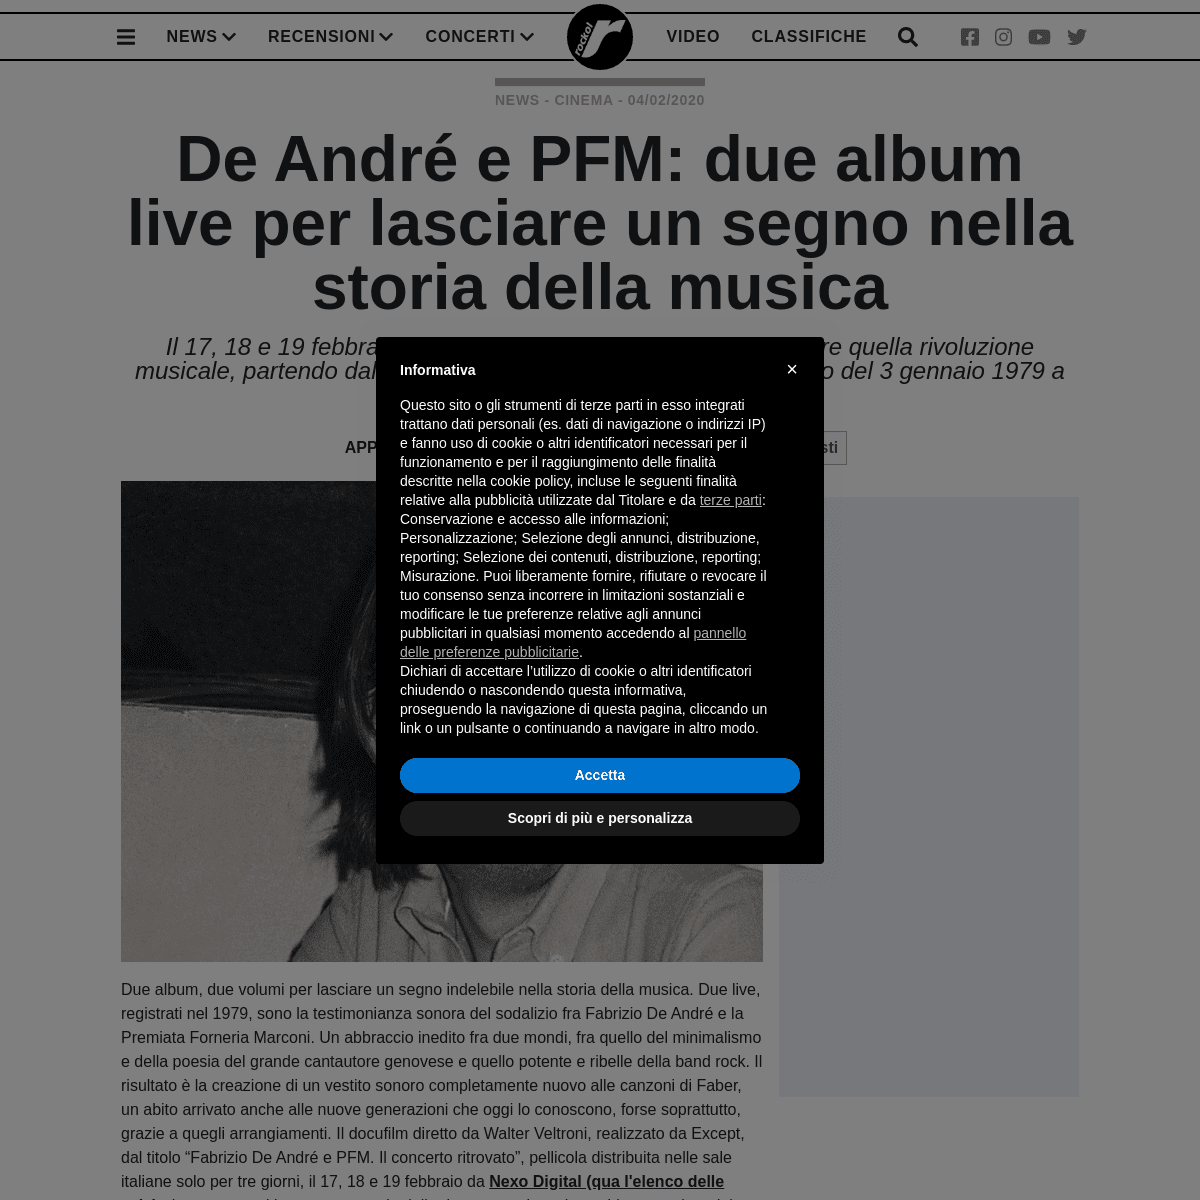 A complete backup of www.rockol.it/news-710930/de-andre-e-pfm-due-album-live-lasciare-segno-nella-storia-della-musica